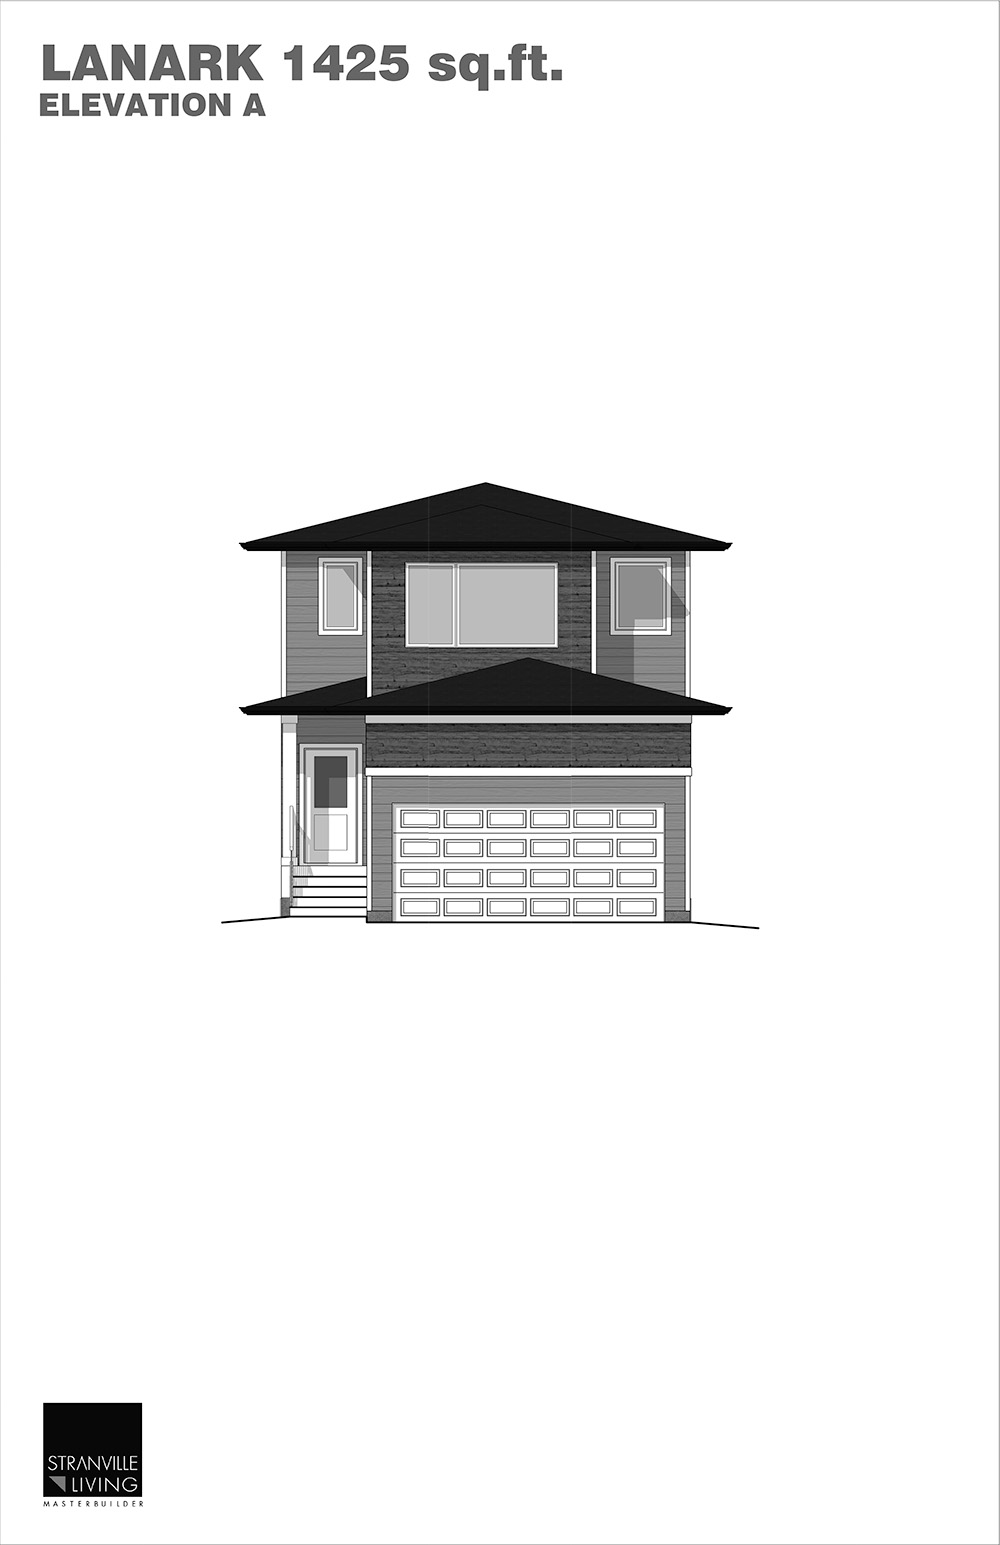 Lanark home model exterior elevation